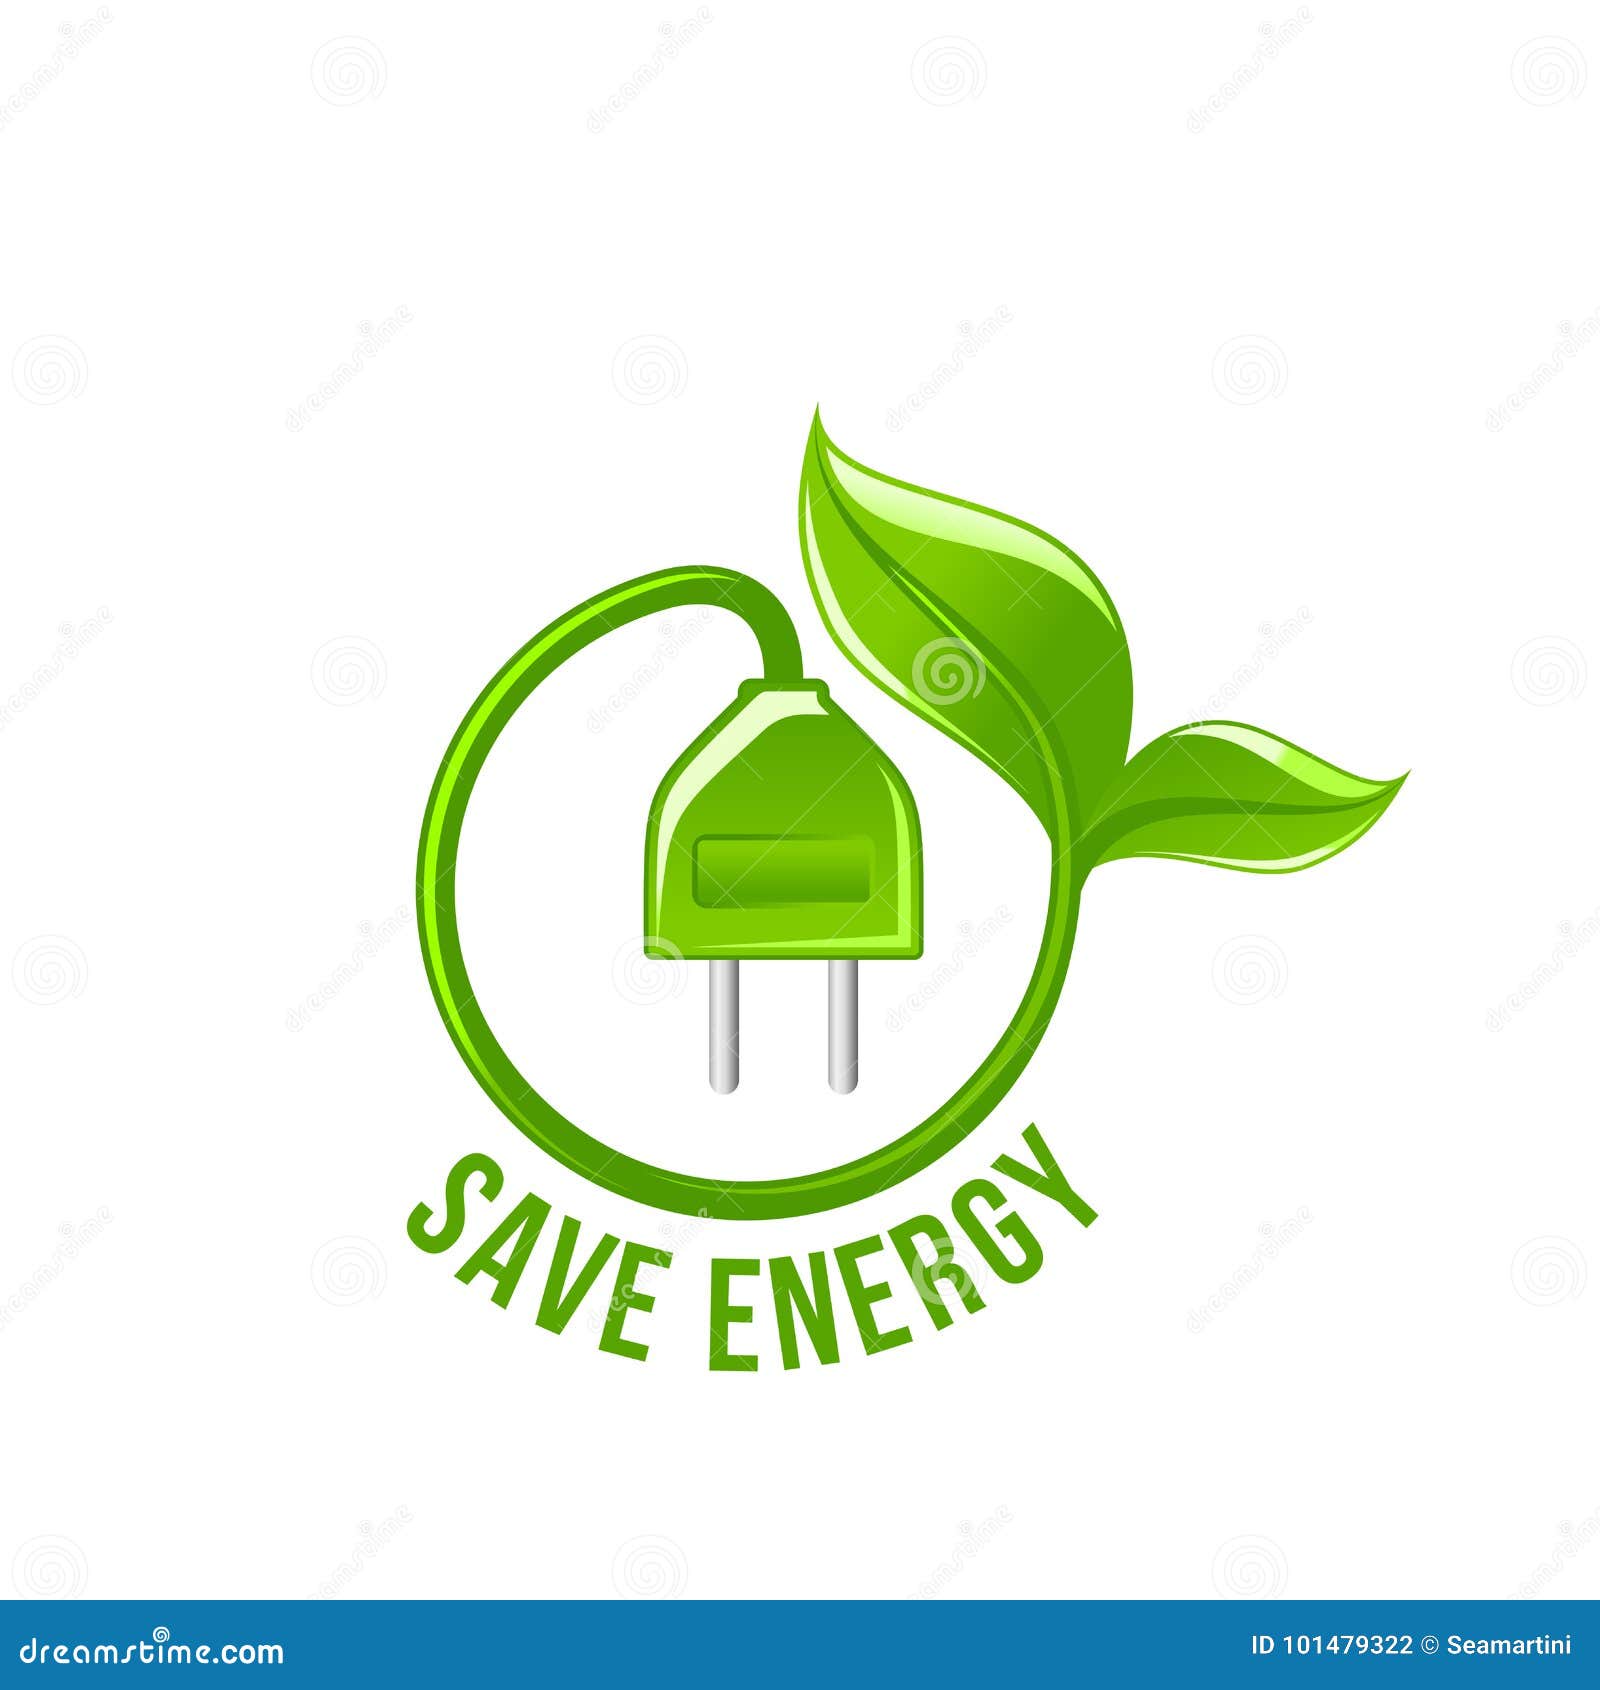 Kết quả hình ảnh cho save electricity cartoon"